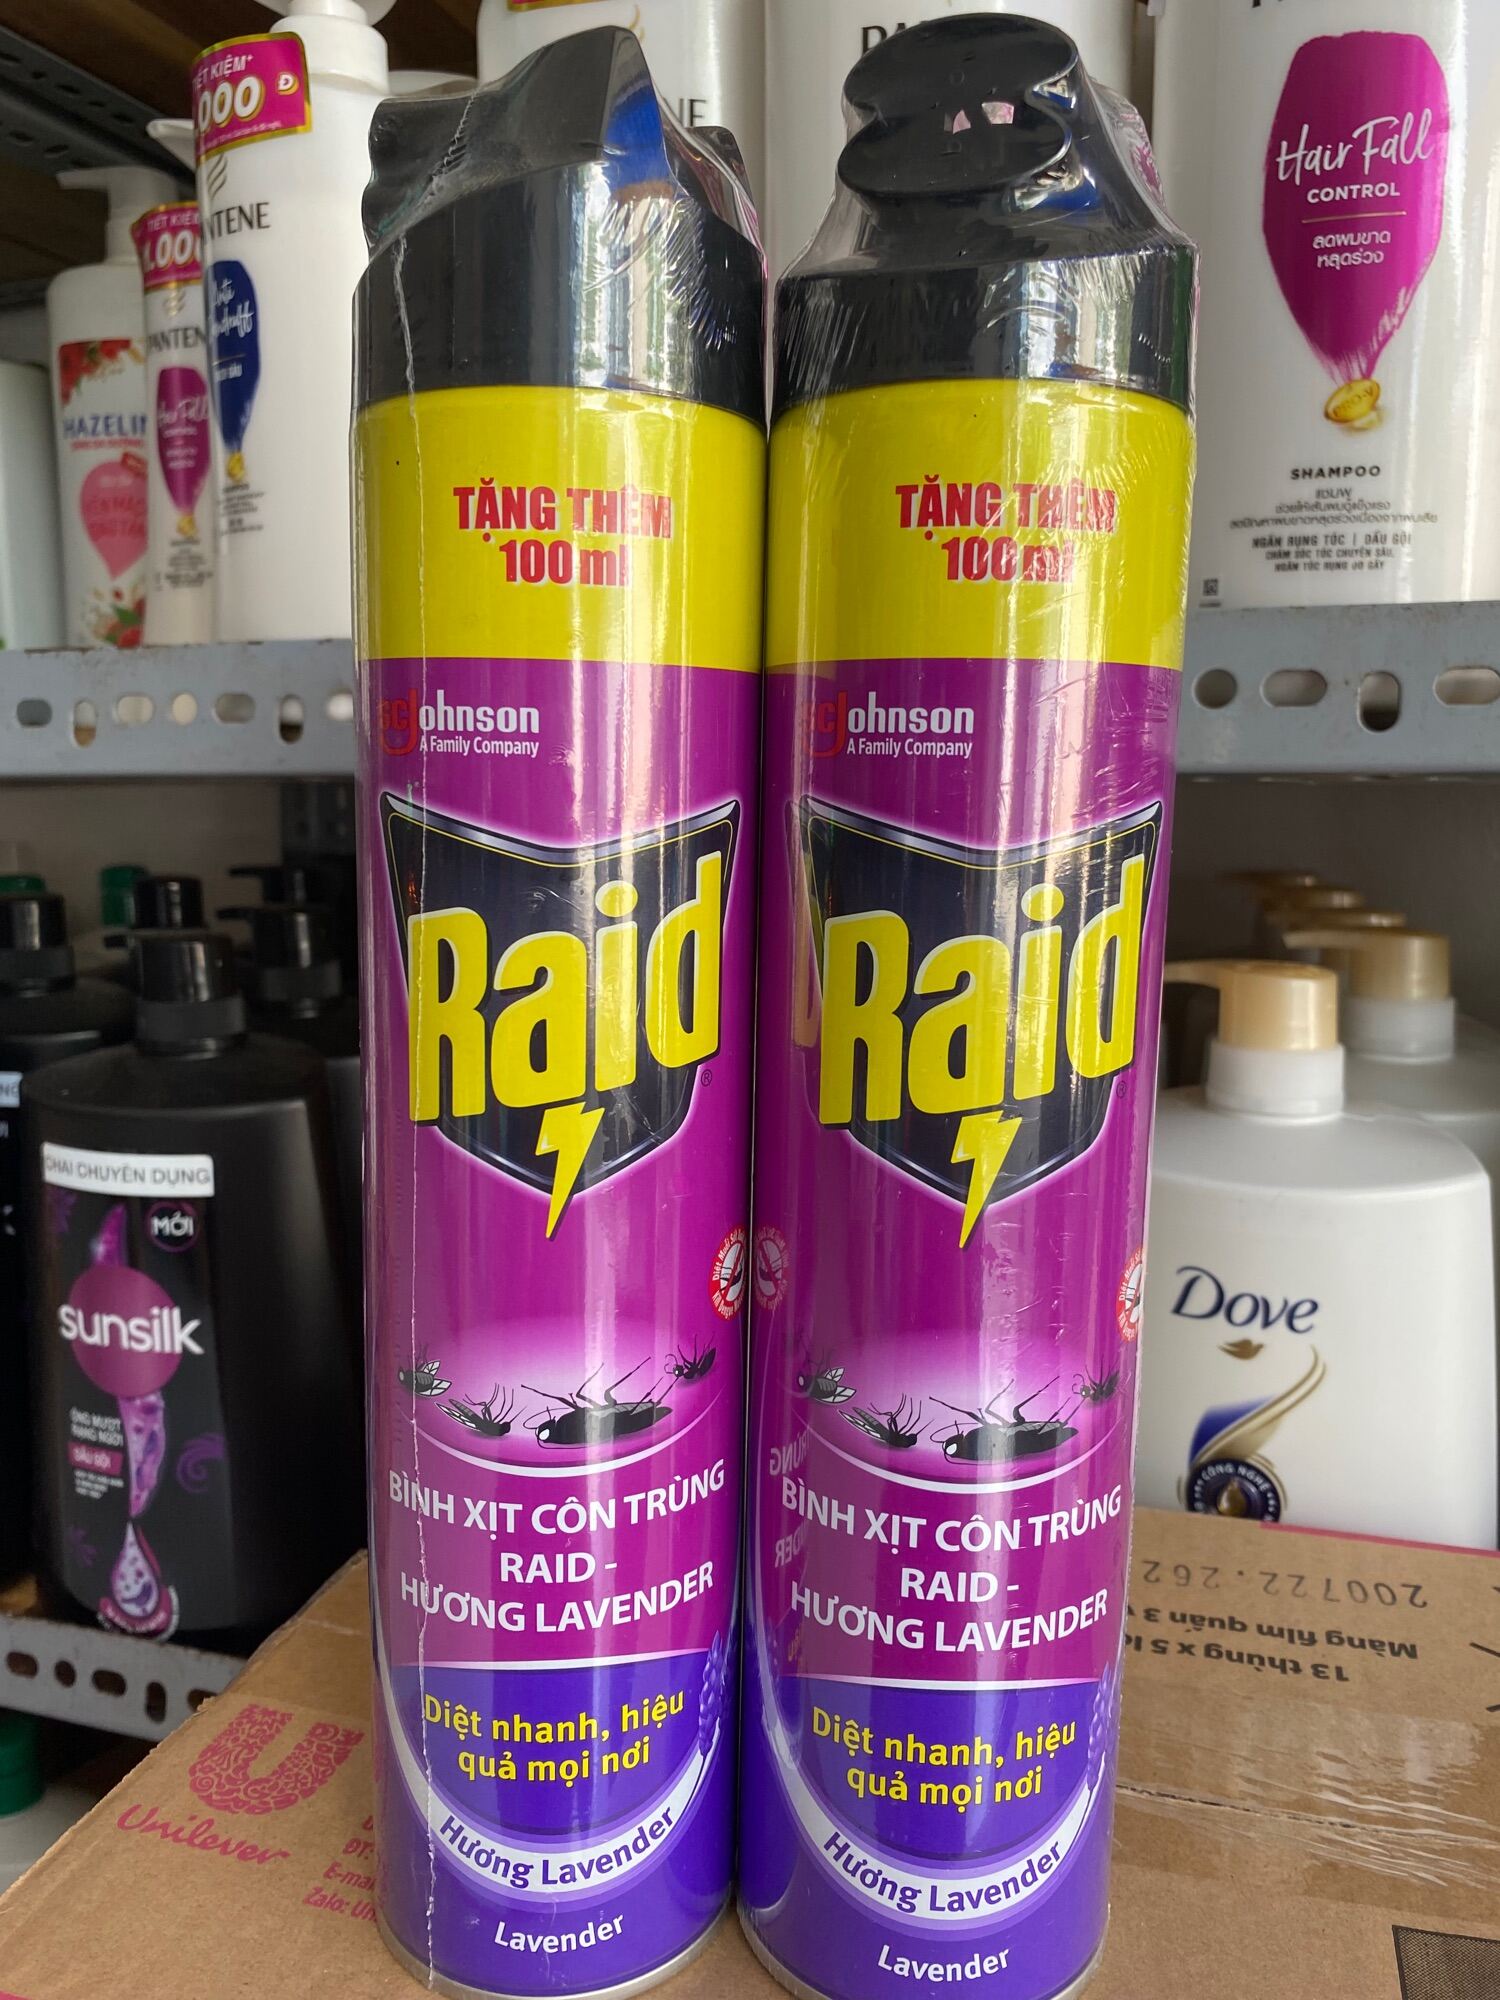 Bình xịt côn trùng RAID- hương lavender 600ml tặng thêm 100ml